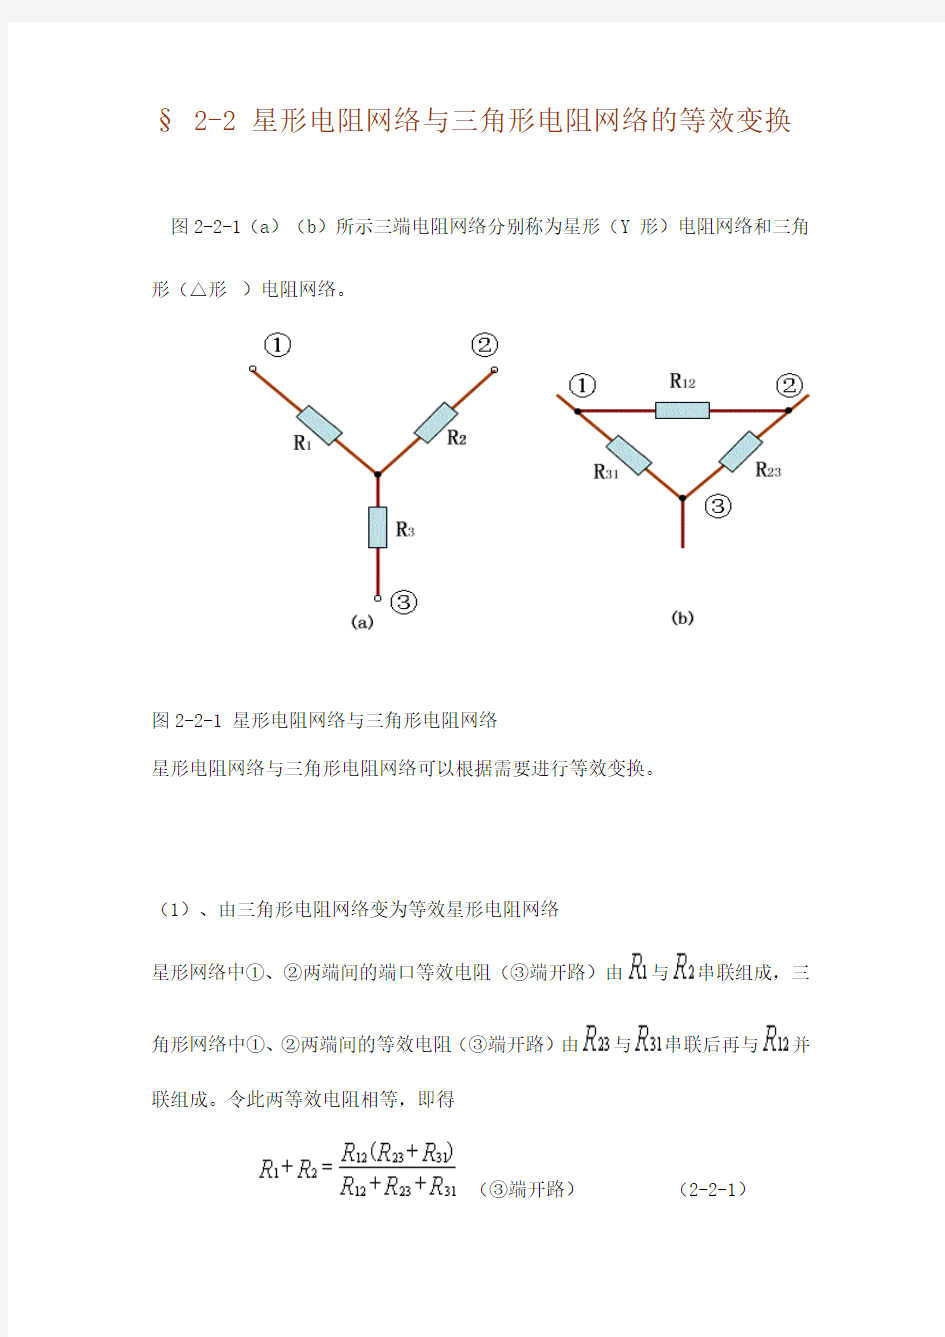 星形电阻网络与三角形电阻网络的等效变换